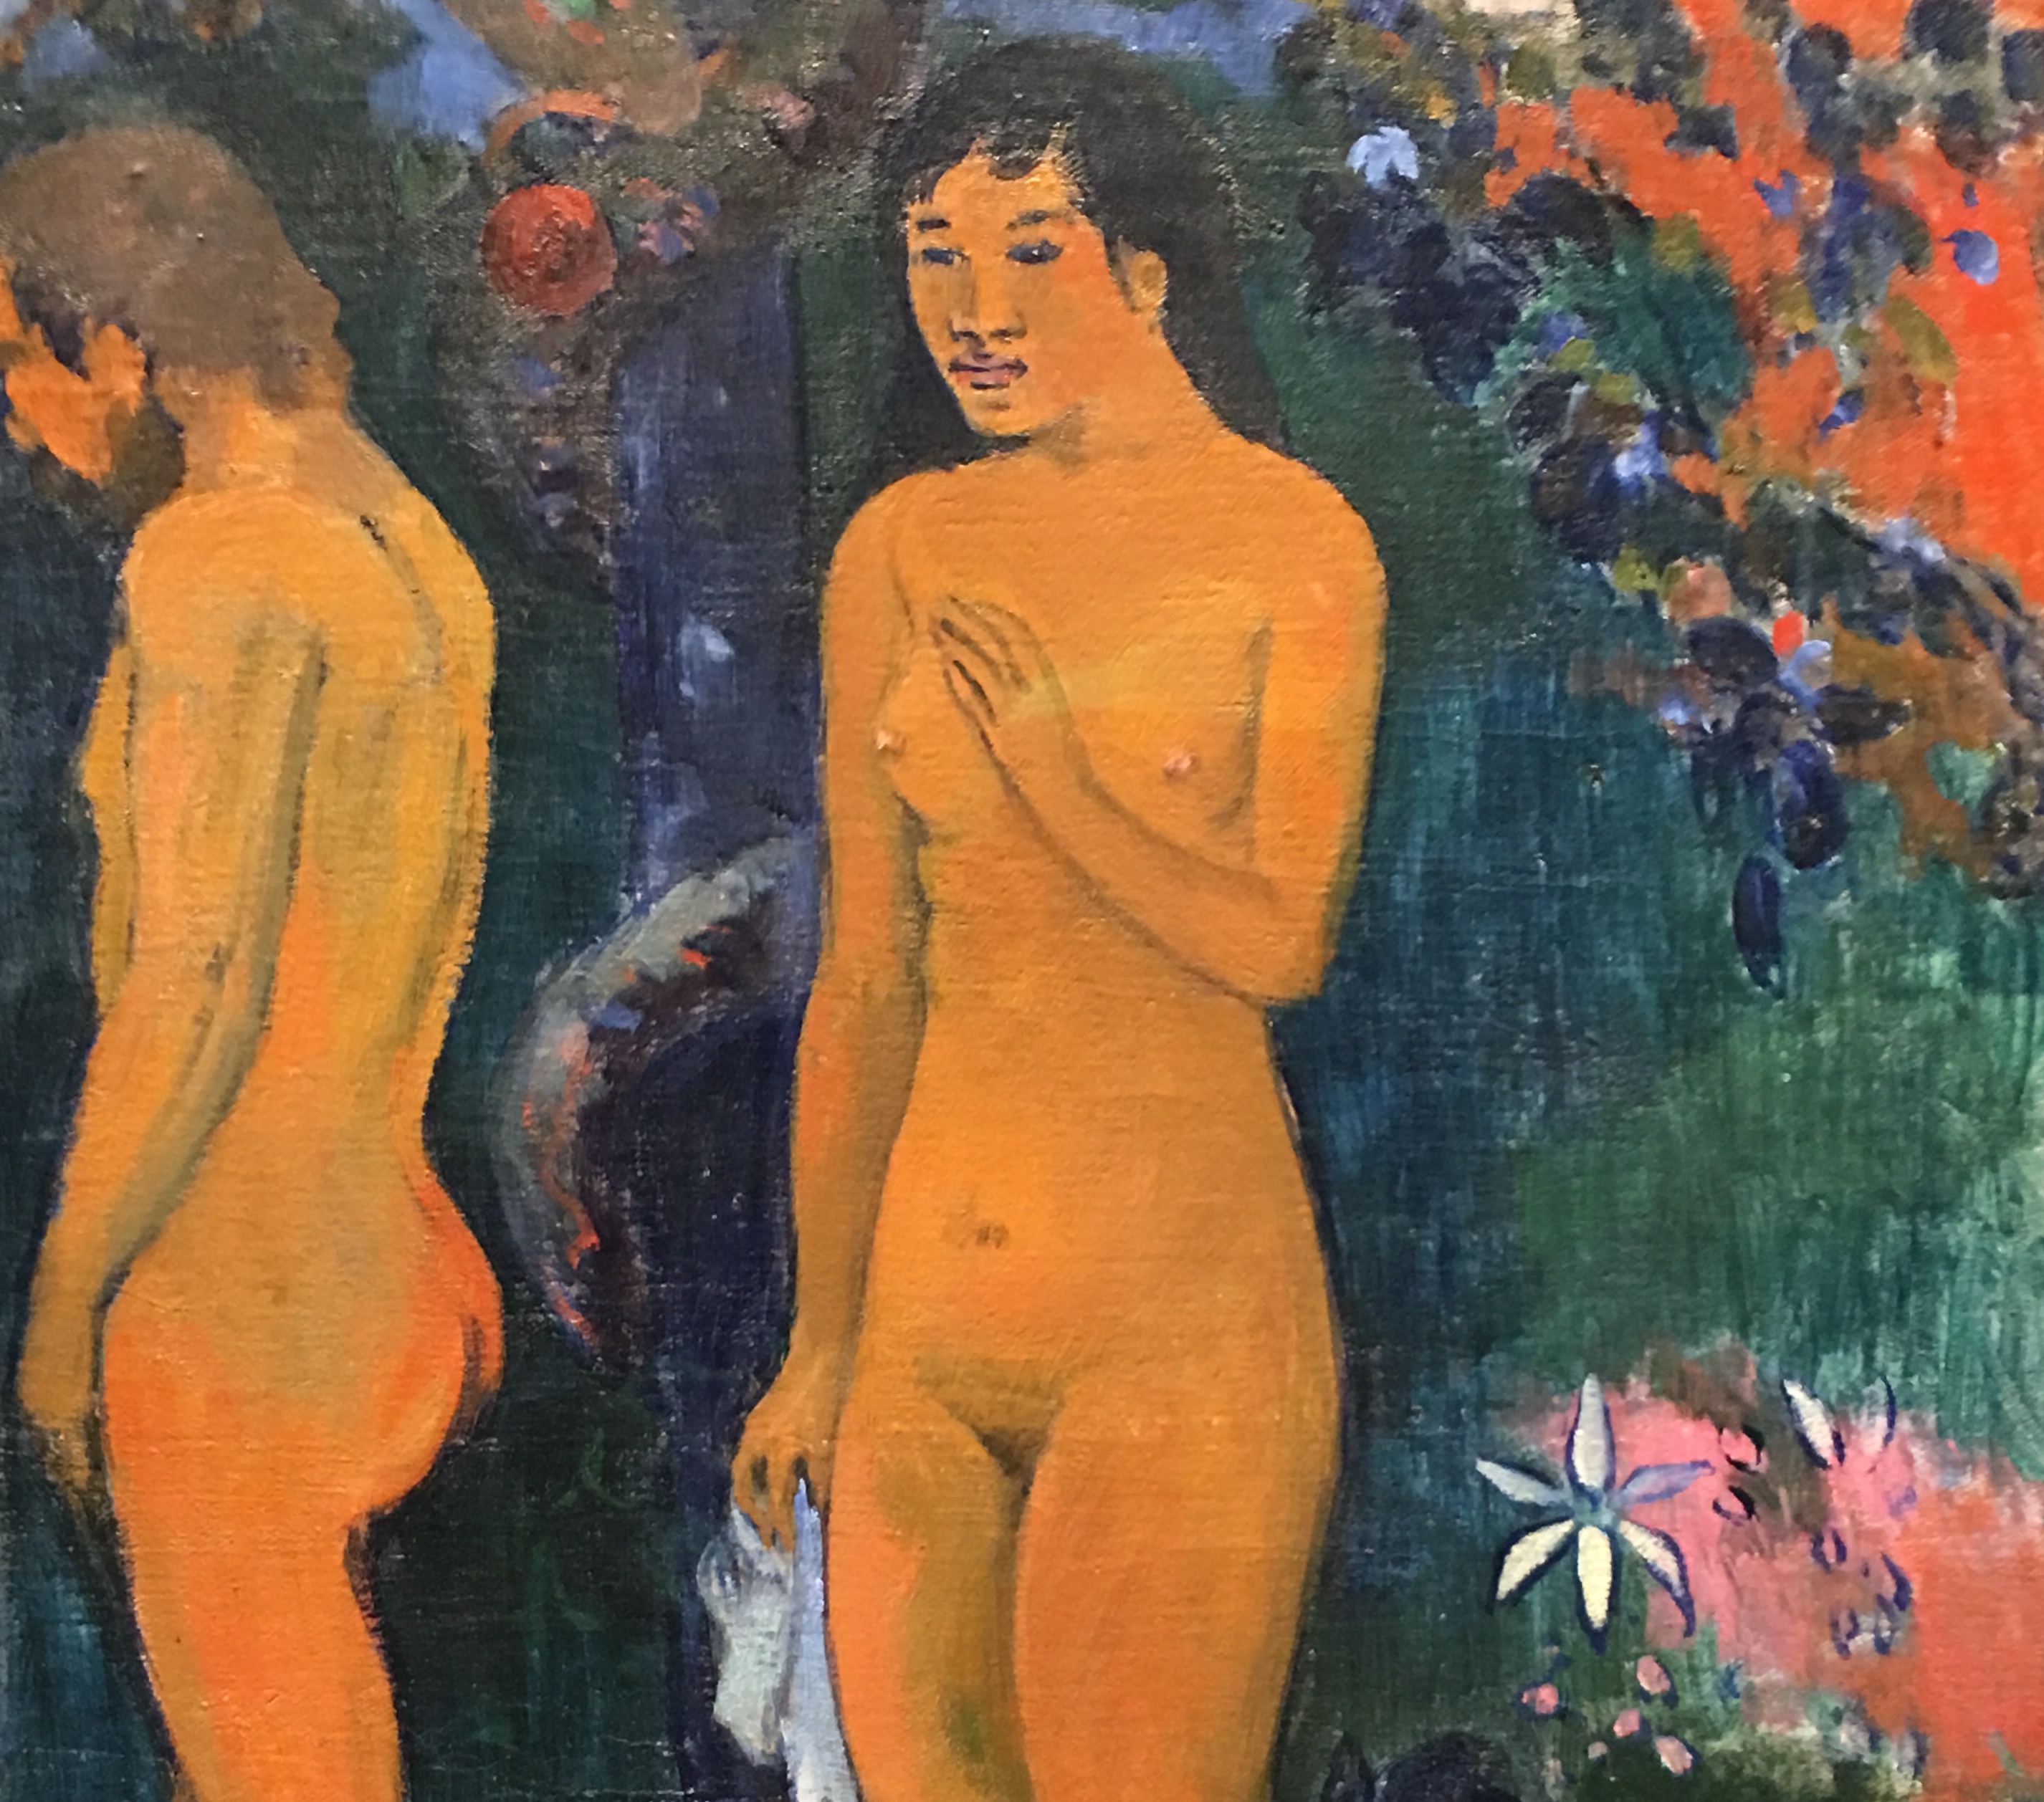 Une peinture de deux personnes nues dans un jardin, mettant en valeur les traits délicats et les couleurs vibrantes du mouvement impressionniste. Cette œuvre d'art est l'un des trésors du MBAC.